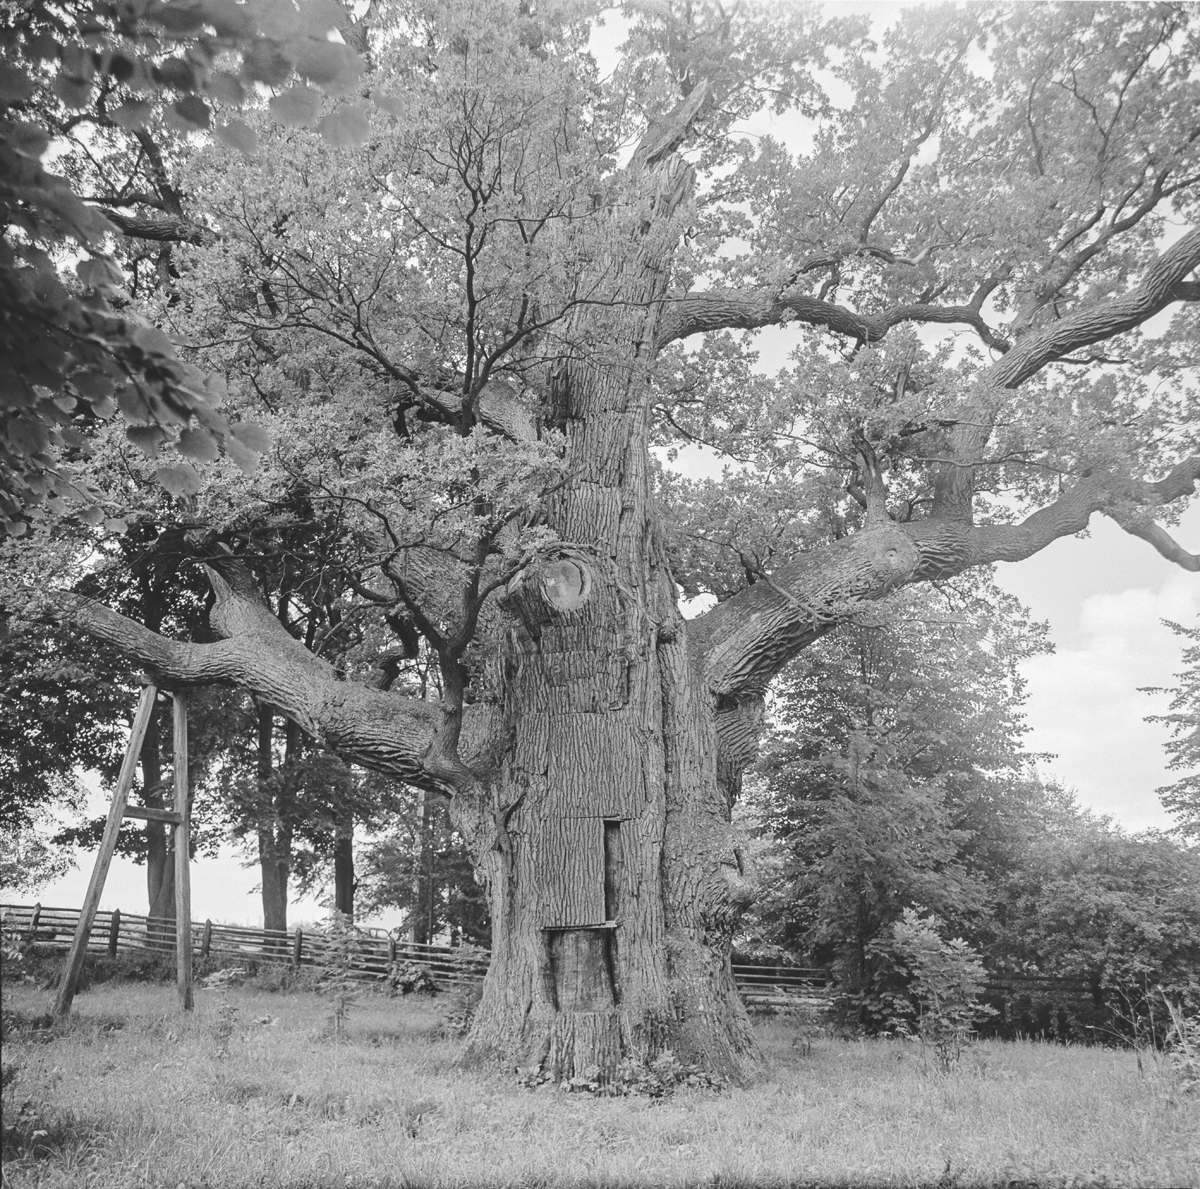 Bartek – the legendary oak